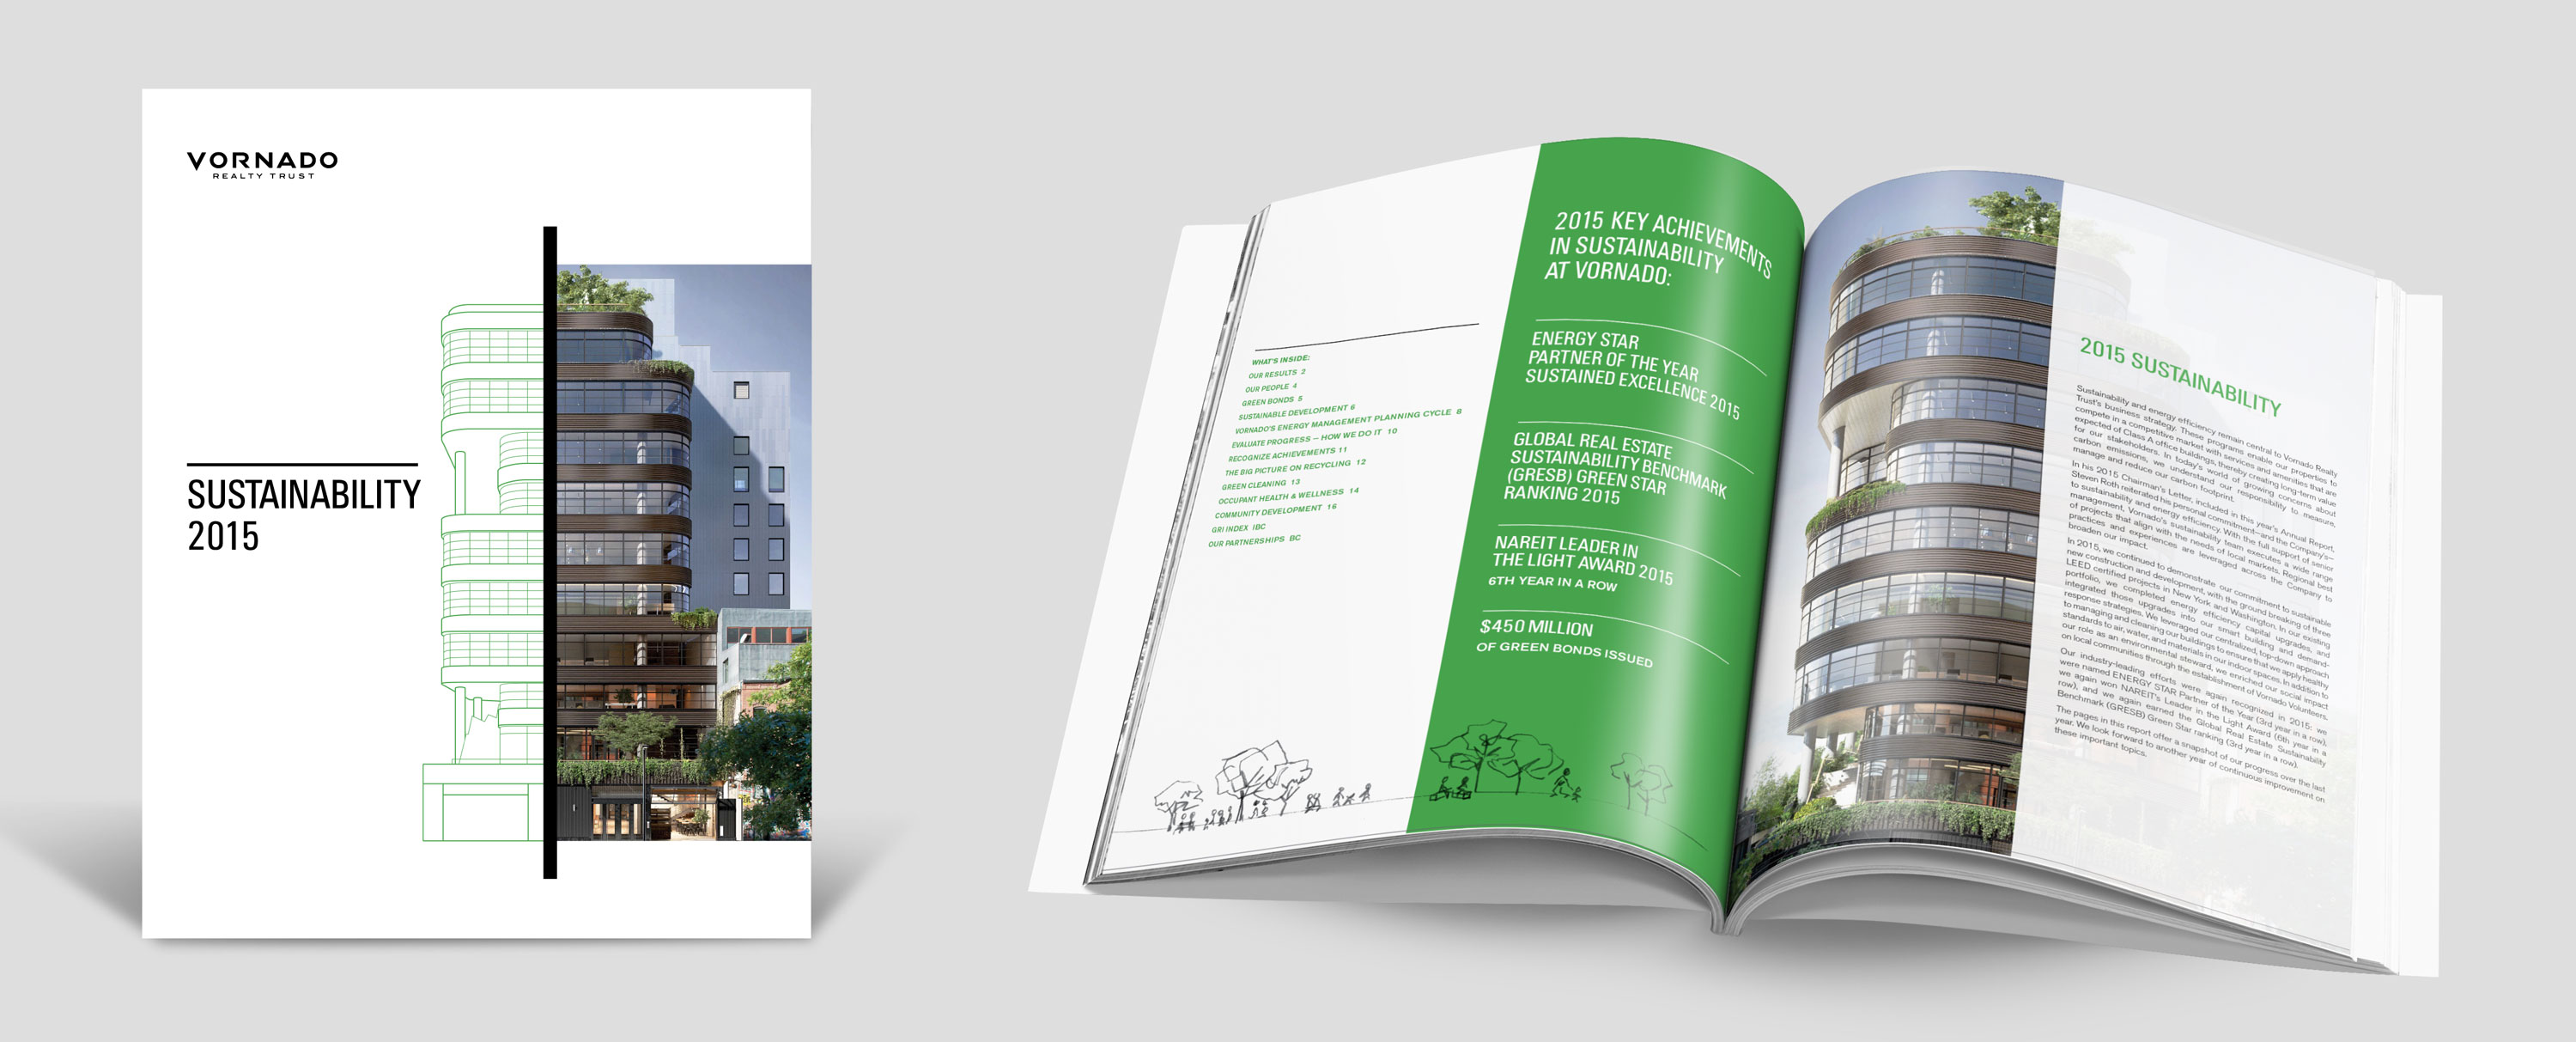 Vornado 2015 Sustainability Report page spread